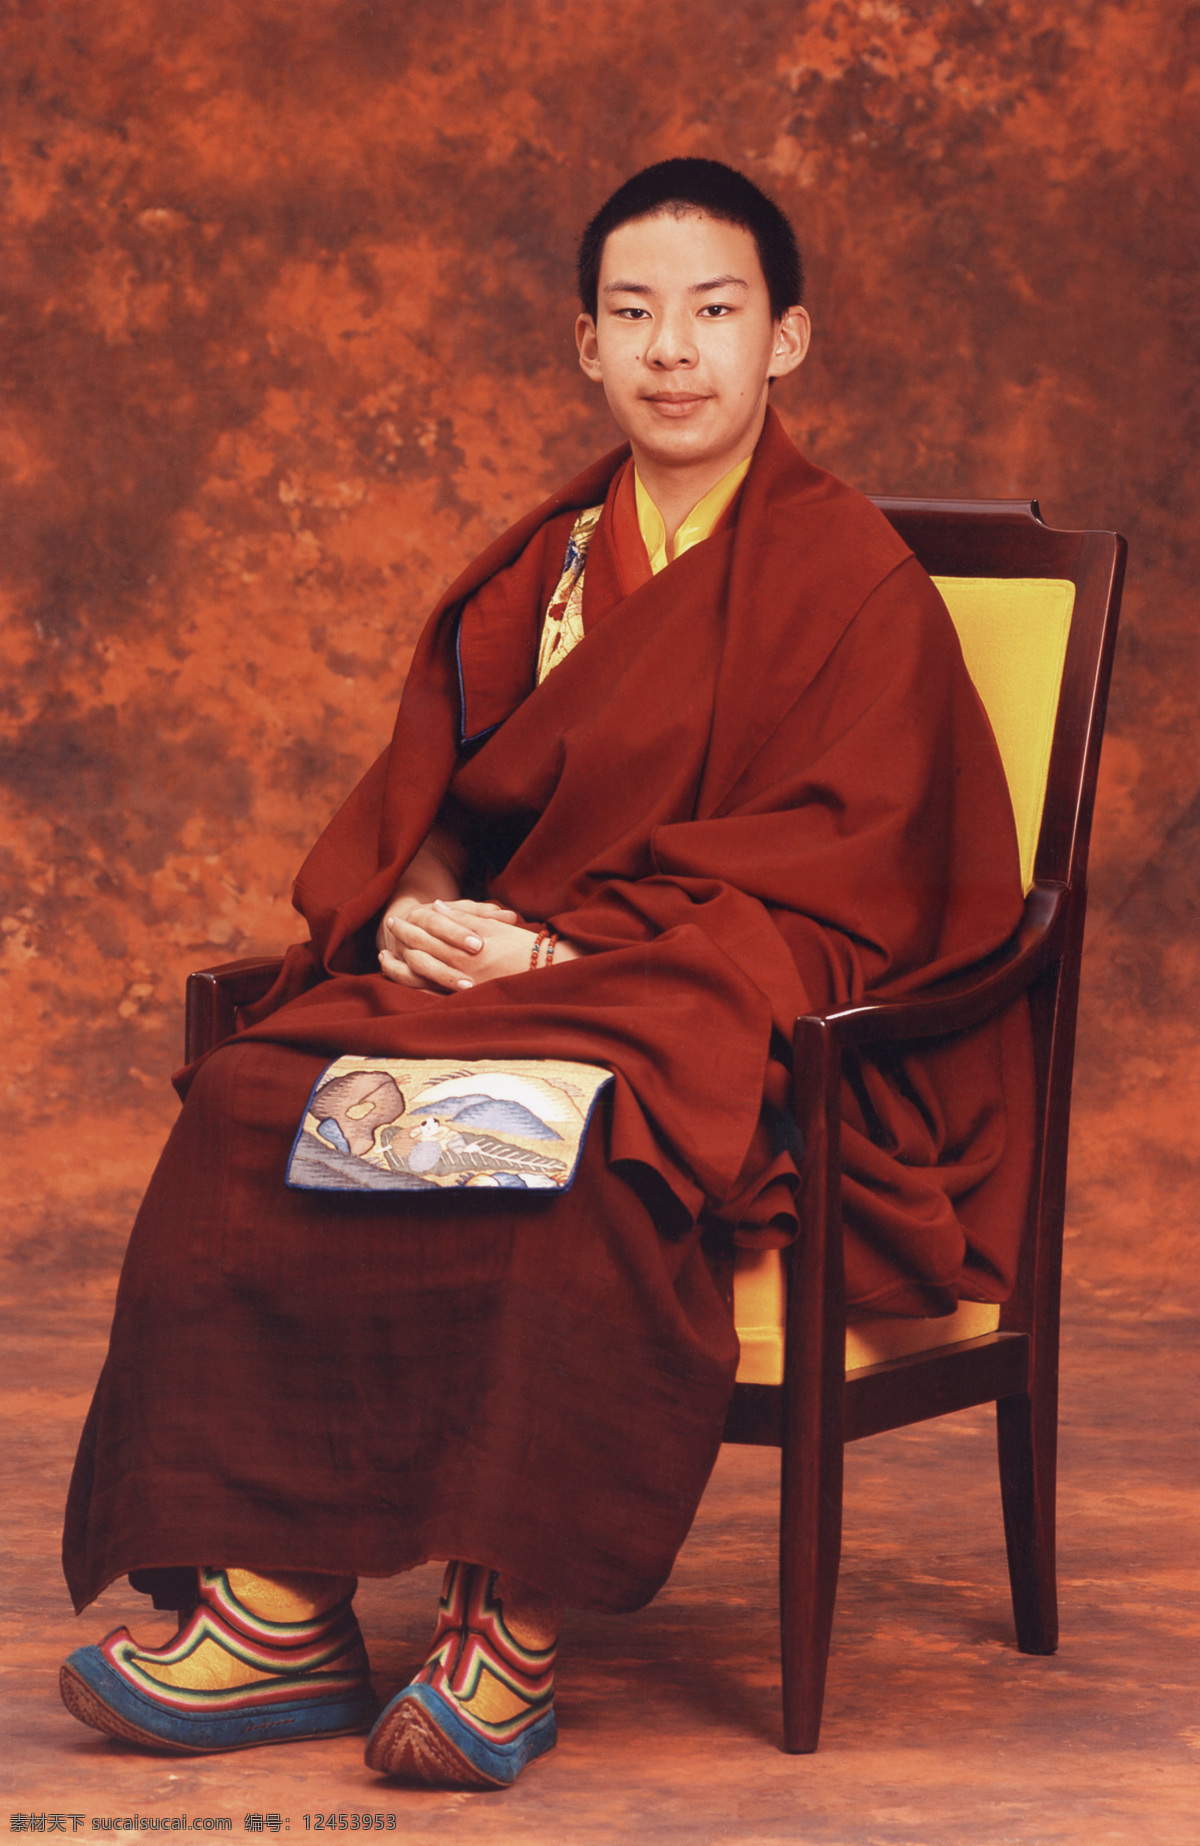 文化艺术 西藏 信仰 宗教 宗教信仰 十一世班禅 日喀则 十一世 班禅 活佛 扎什伦布寺 喇嘛 西藏名族画册